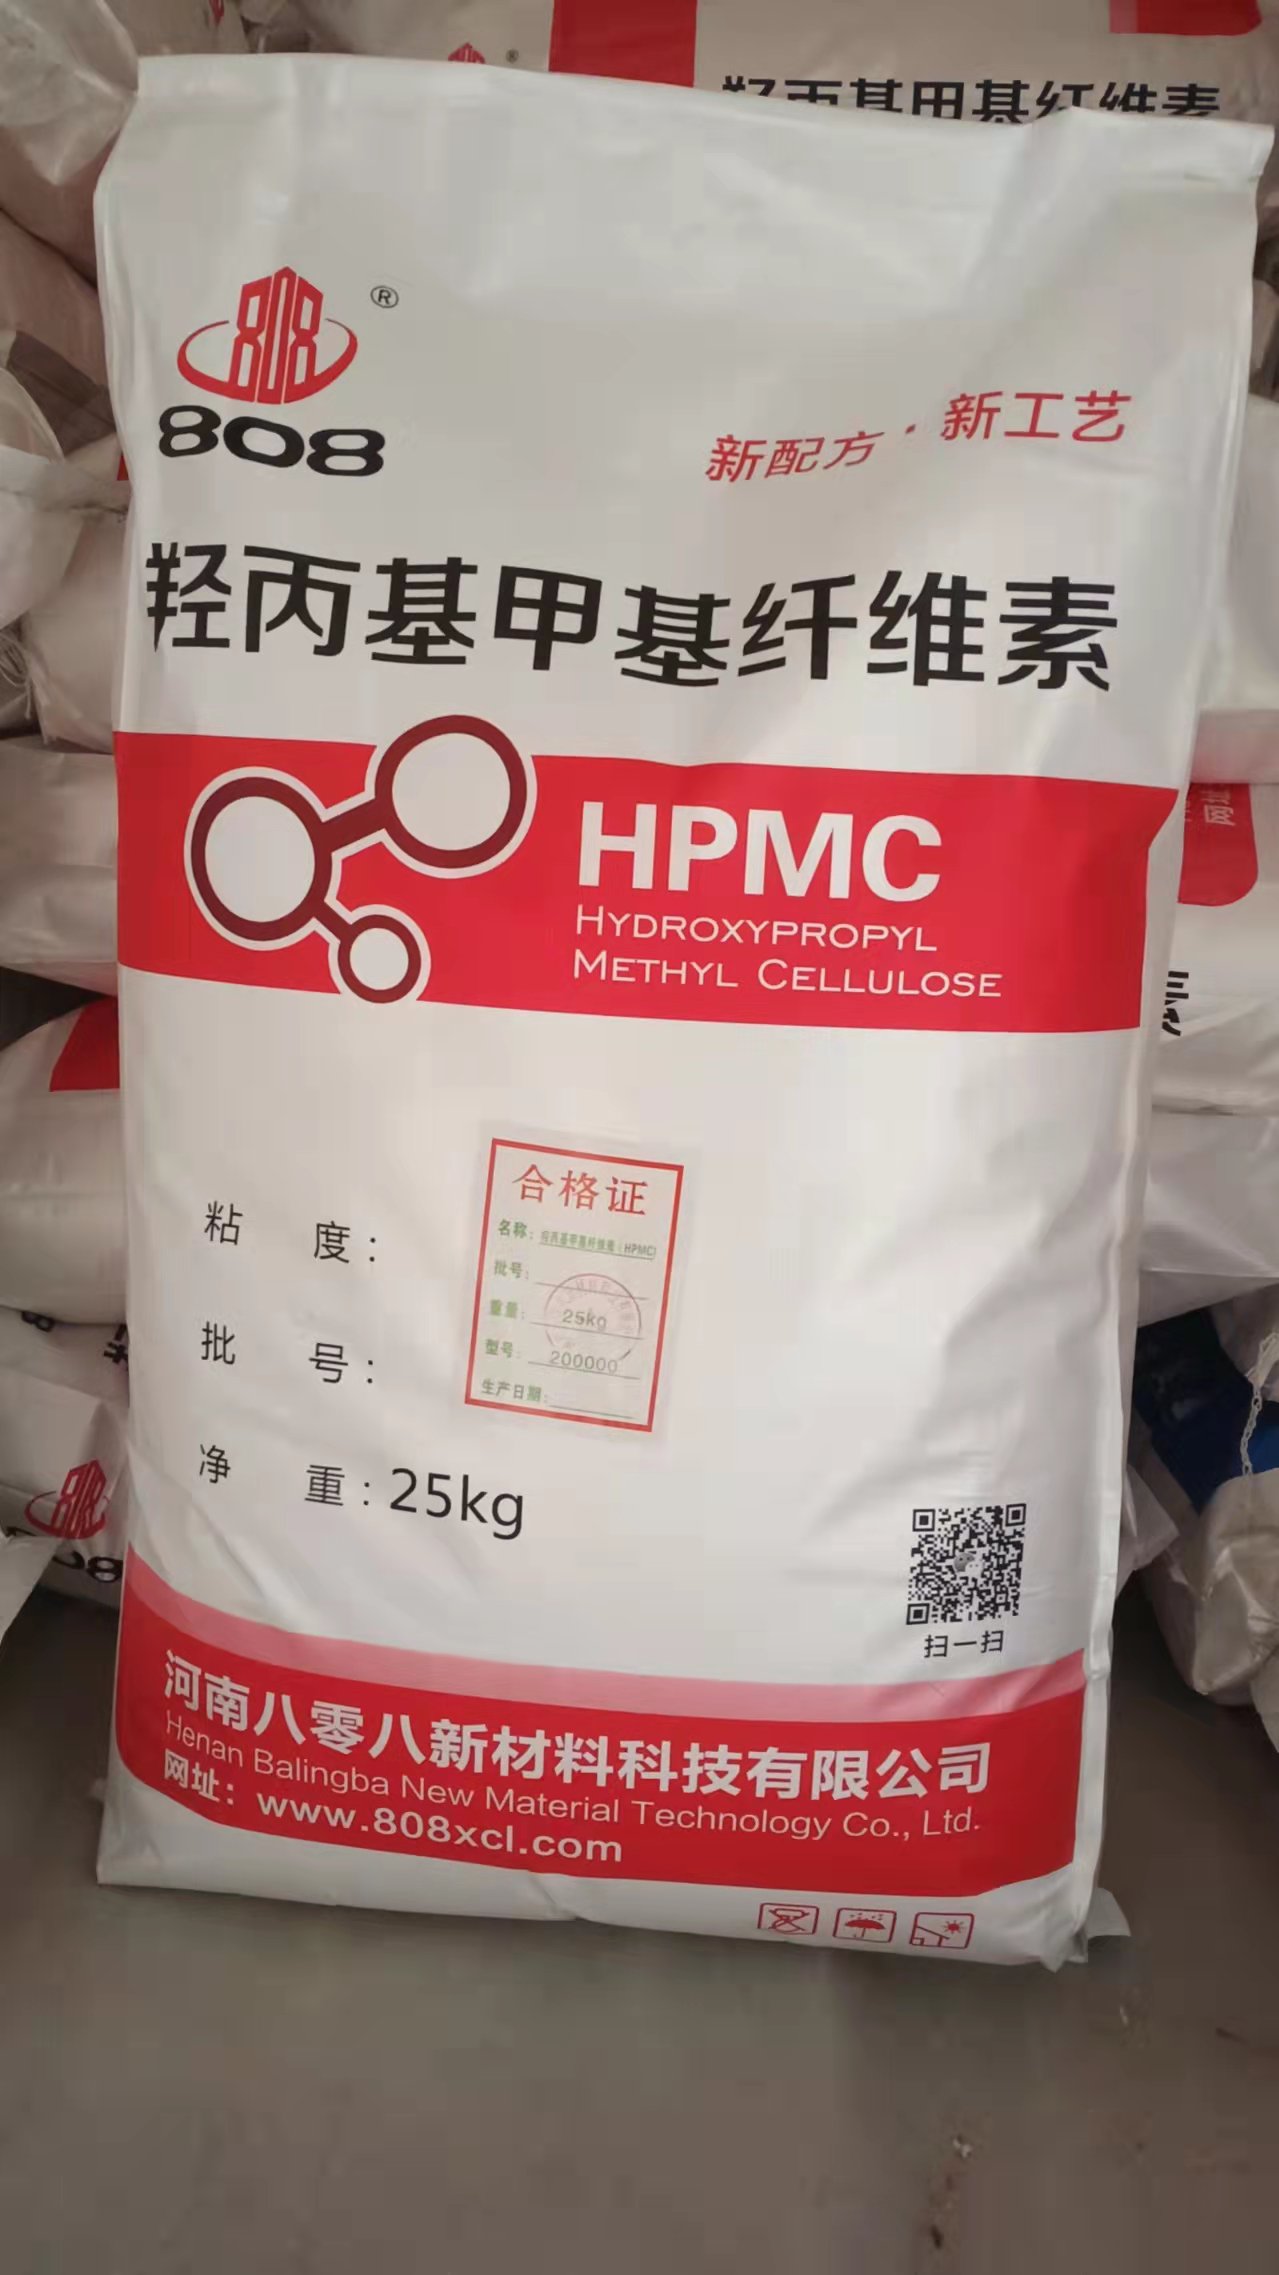 厂家大量纤维素醚 HPMC 【八零八牌】 河南批发纤维素醚 HPMC图片